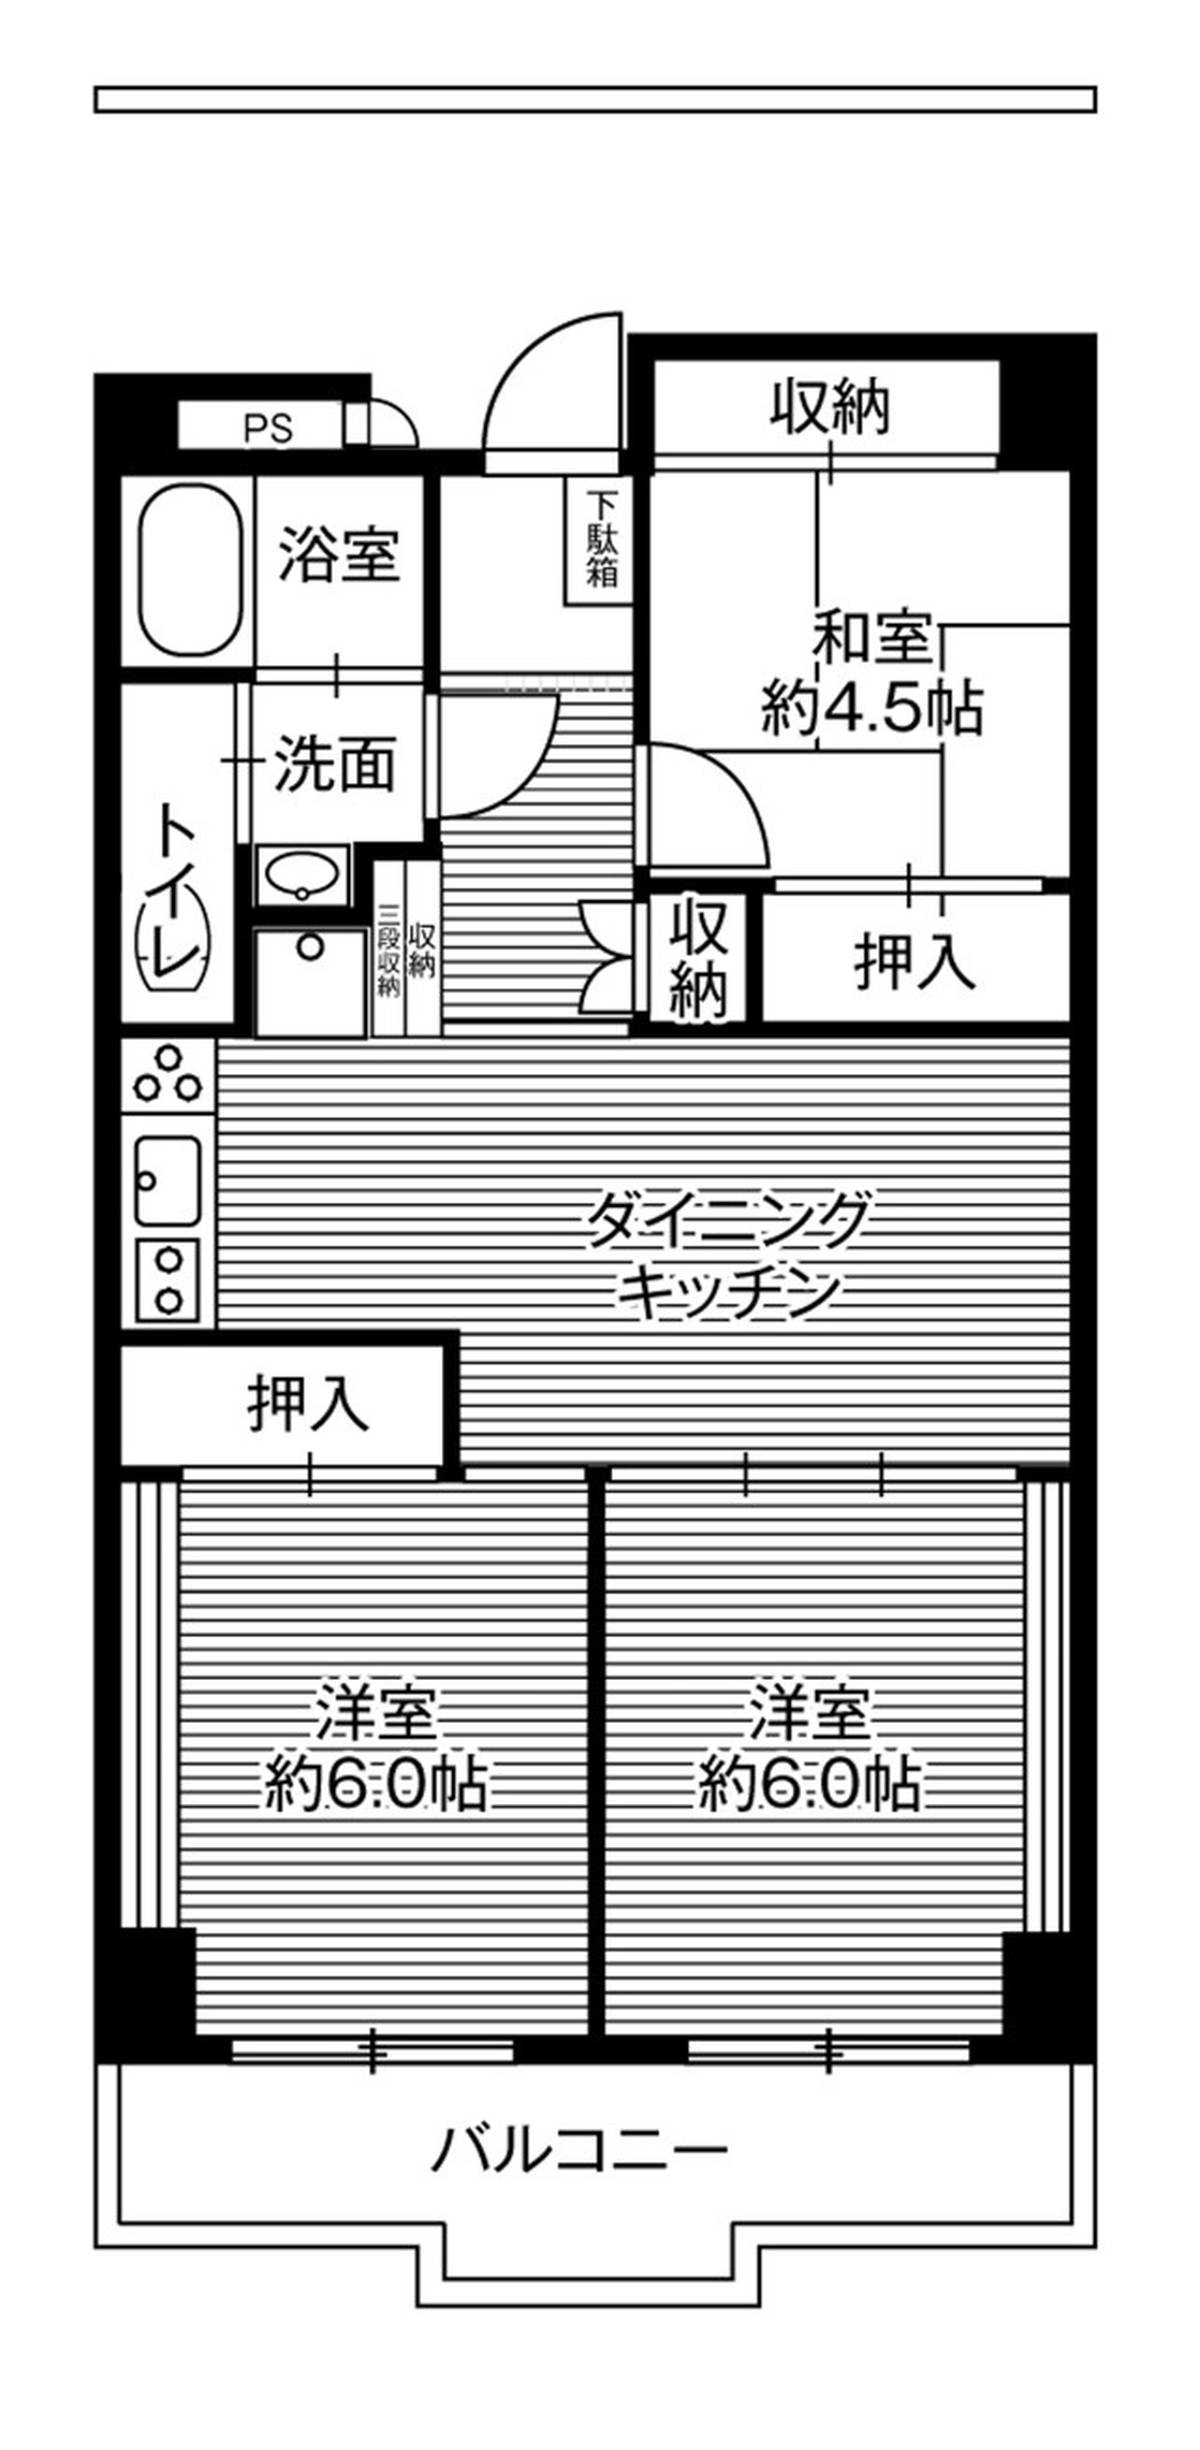 Sơ đồ phòng 3DK của Village House Tochigi Hinode Tower ở Tochigi-shi